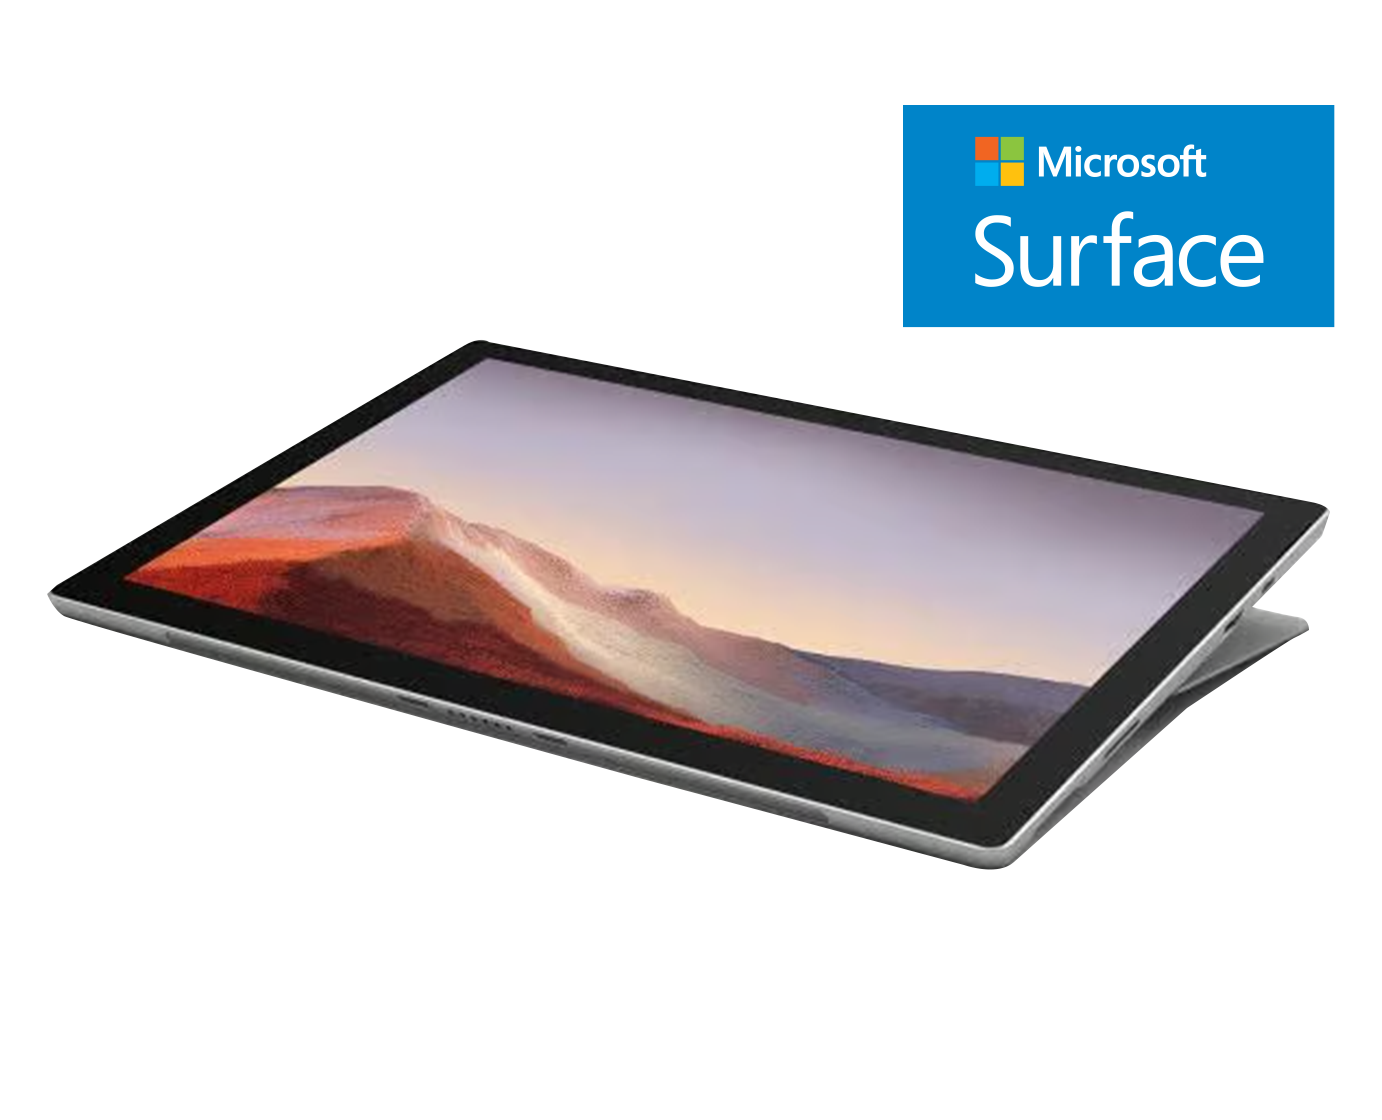 Microsoft Surface Pro 7 / Core I5 1035g4 a 1,1ghz / 8Gb ram / 128gb ssd / 12" / Teclado desmontable / Win 10 Pro "Liquidación"